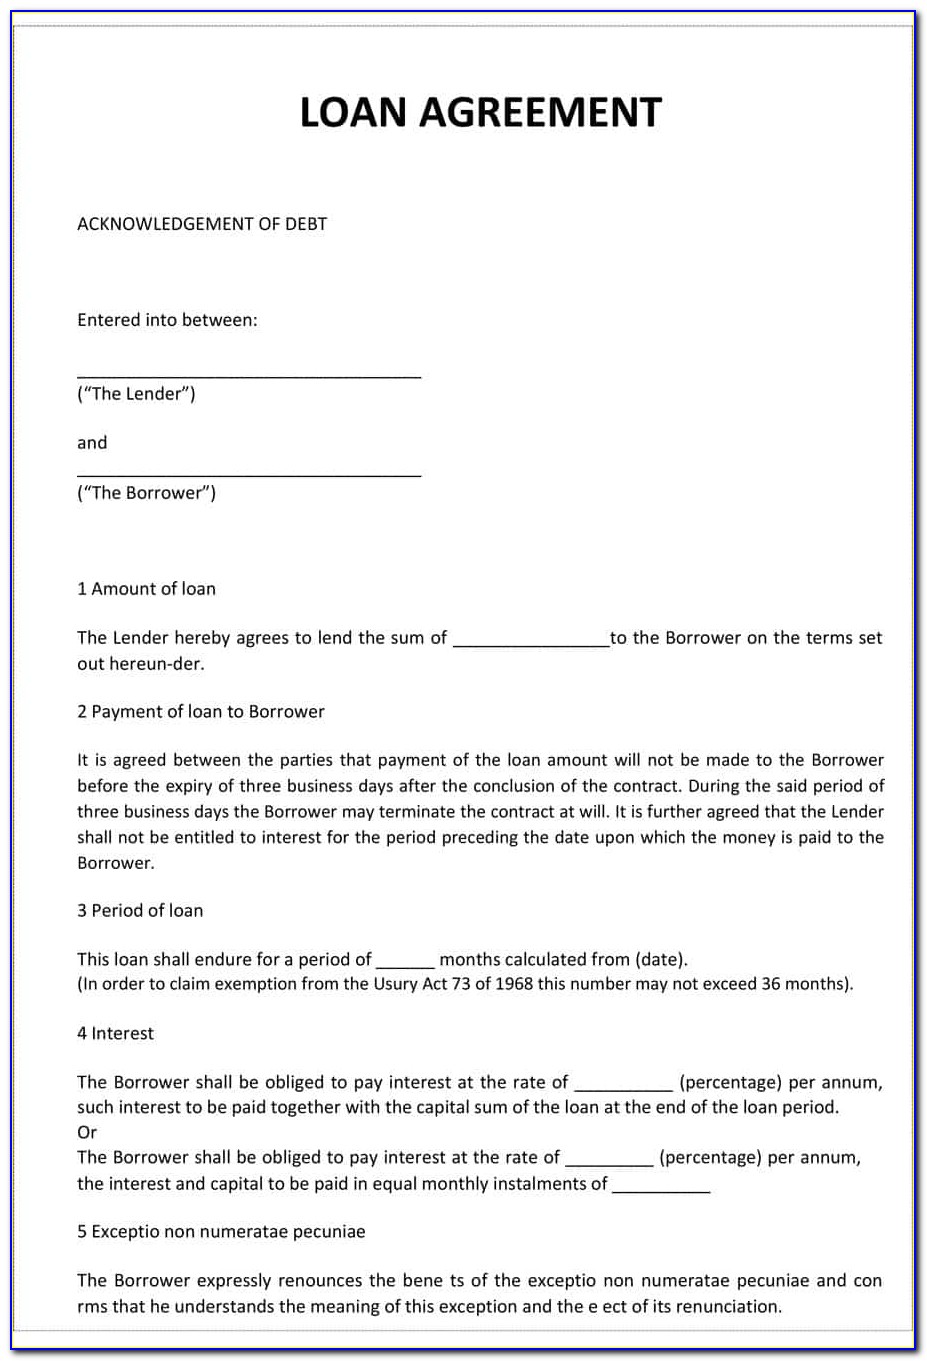 Free Loan Application Form Template Form : Resume Examples #LjkrvNRkl8